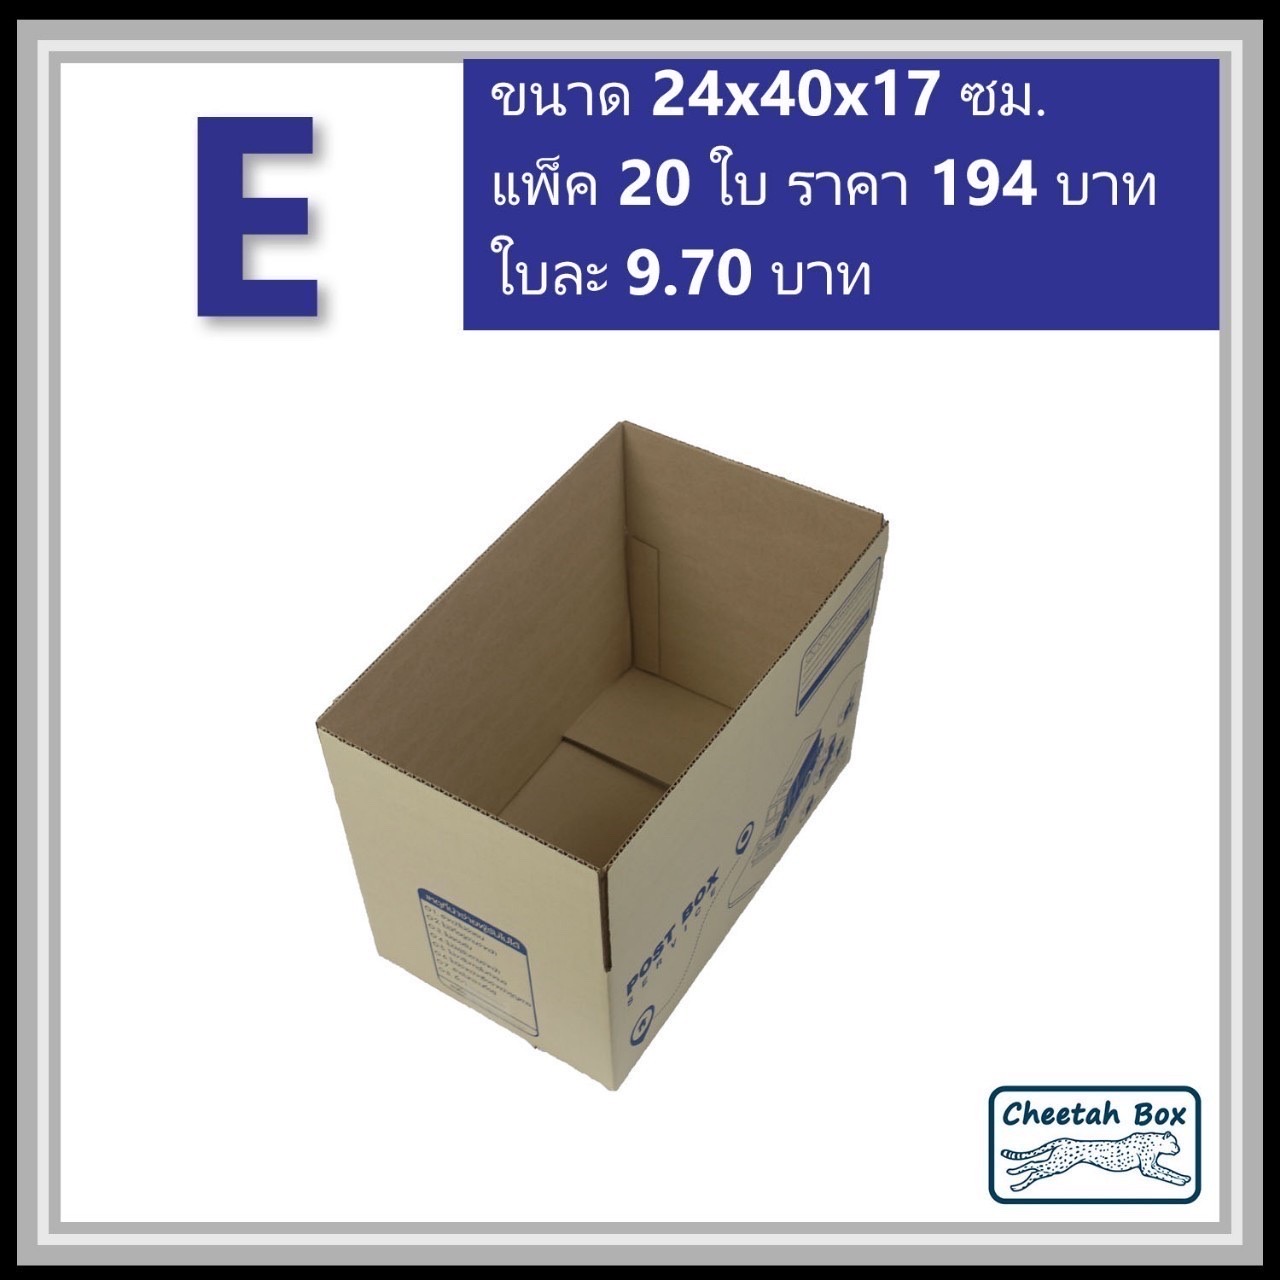 กล่องไปรษณีย์ E (จ) (Cheetah Box ขนาด 24*40*17 CM)